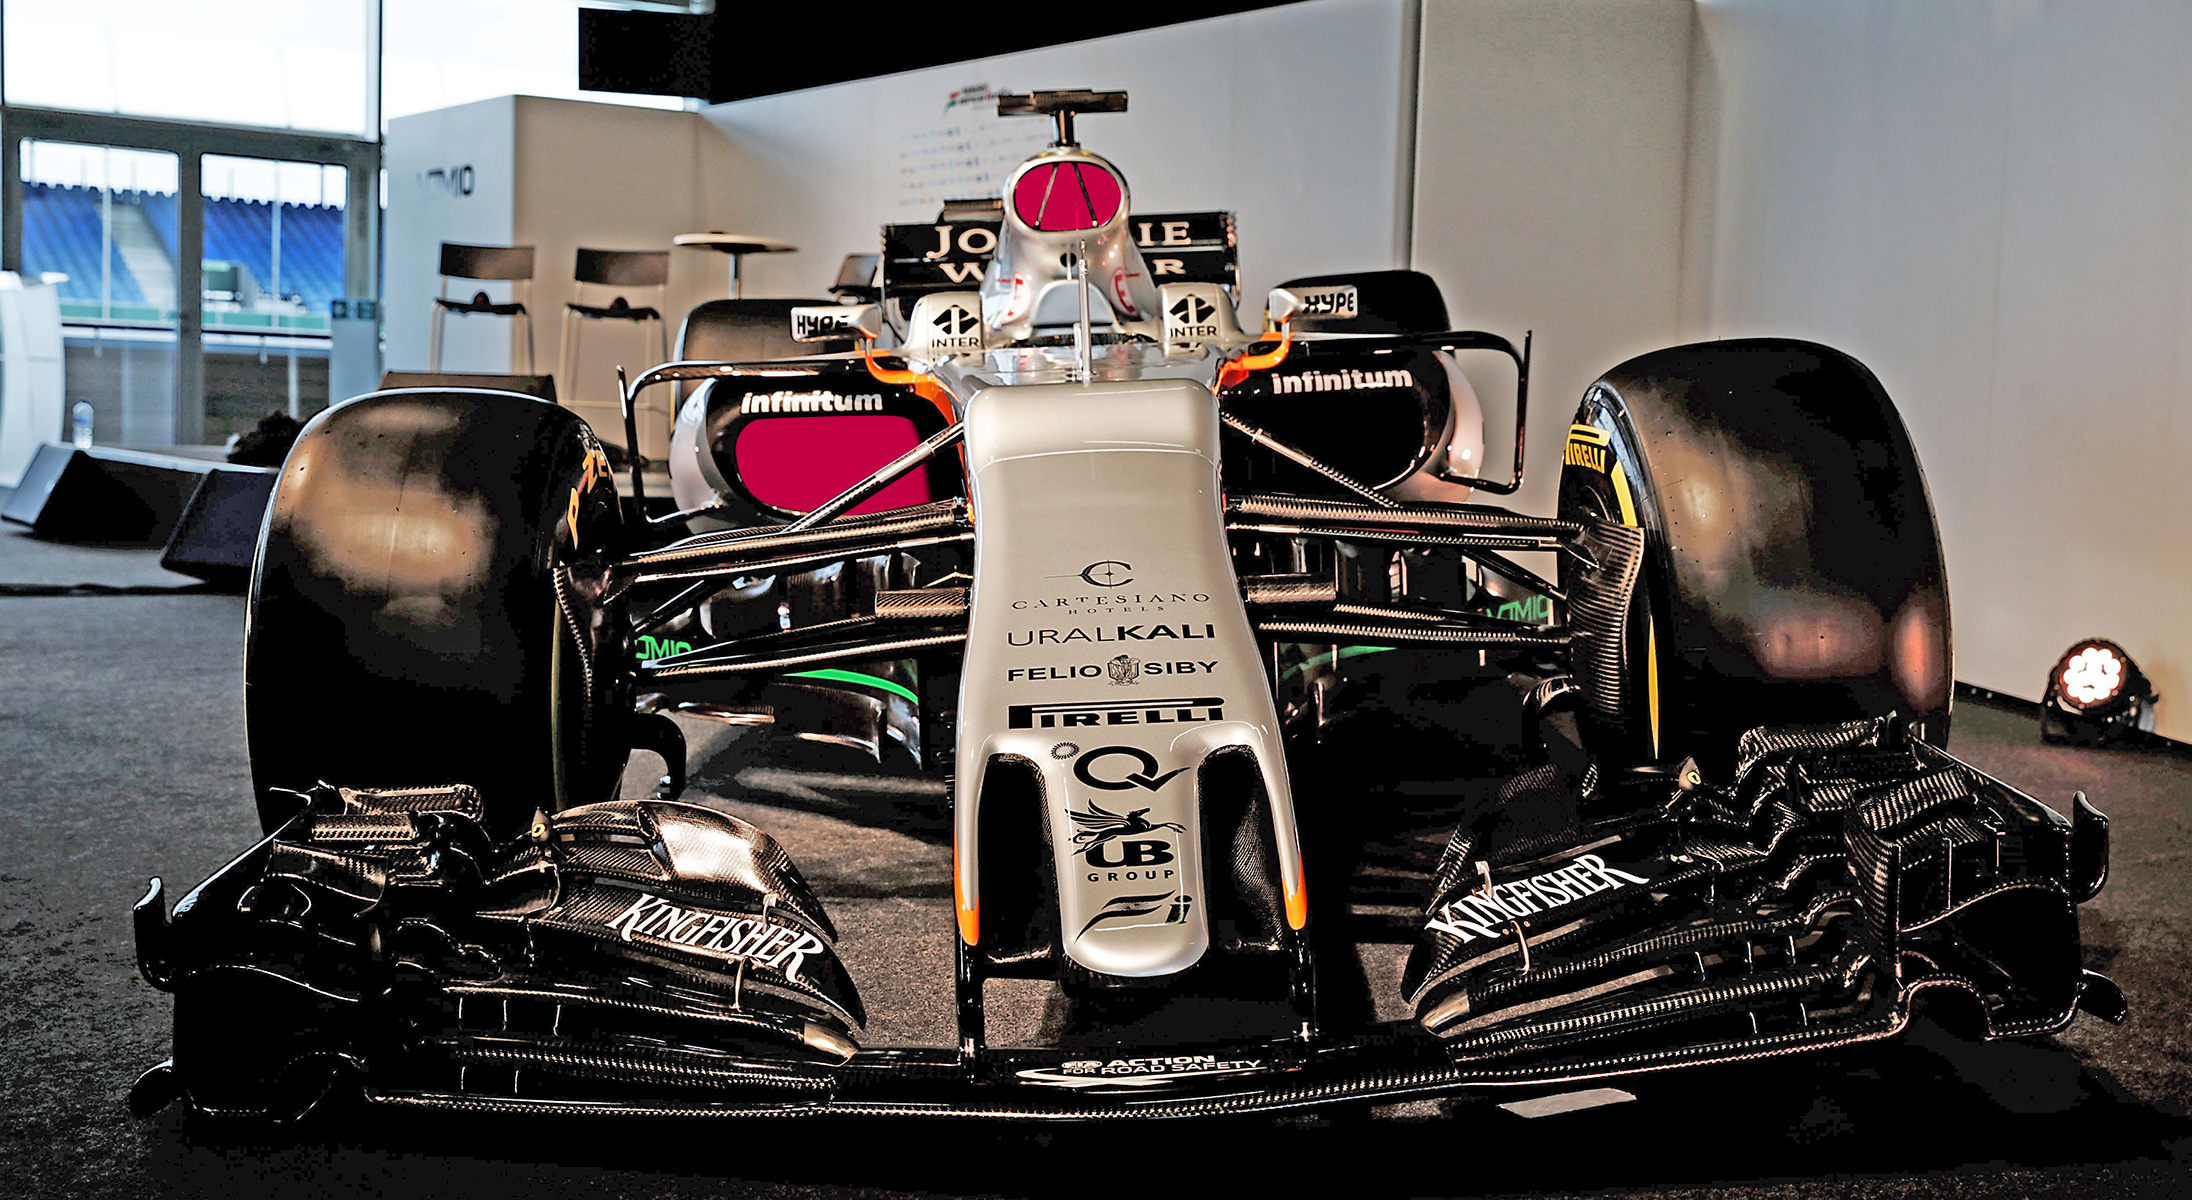 Análisis técnico del Force India VJM10